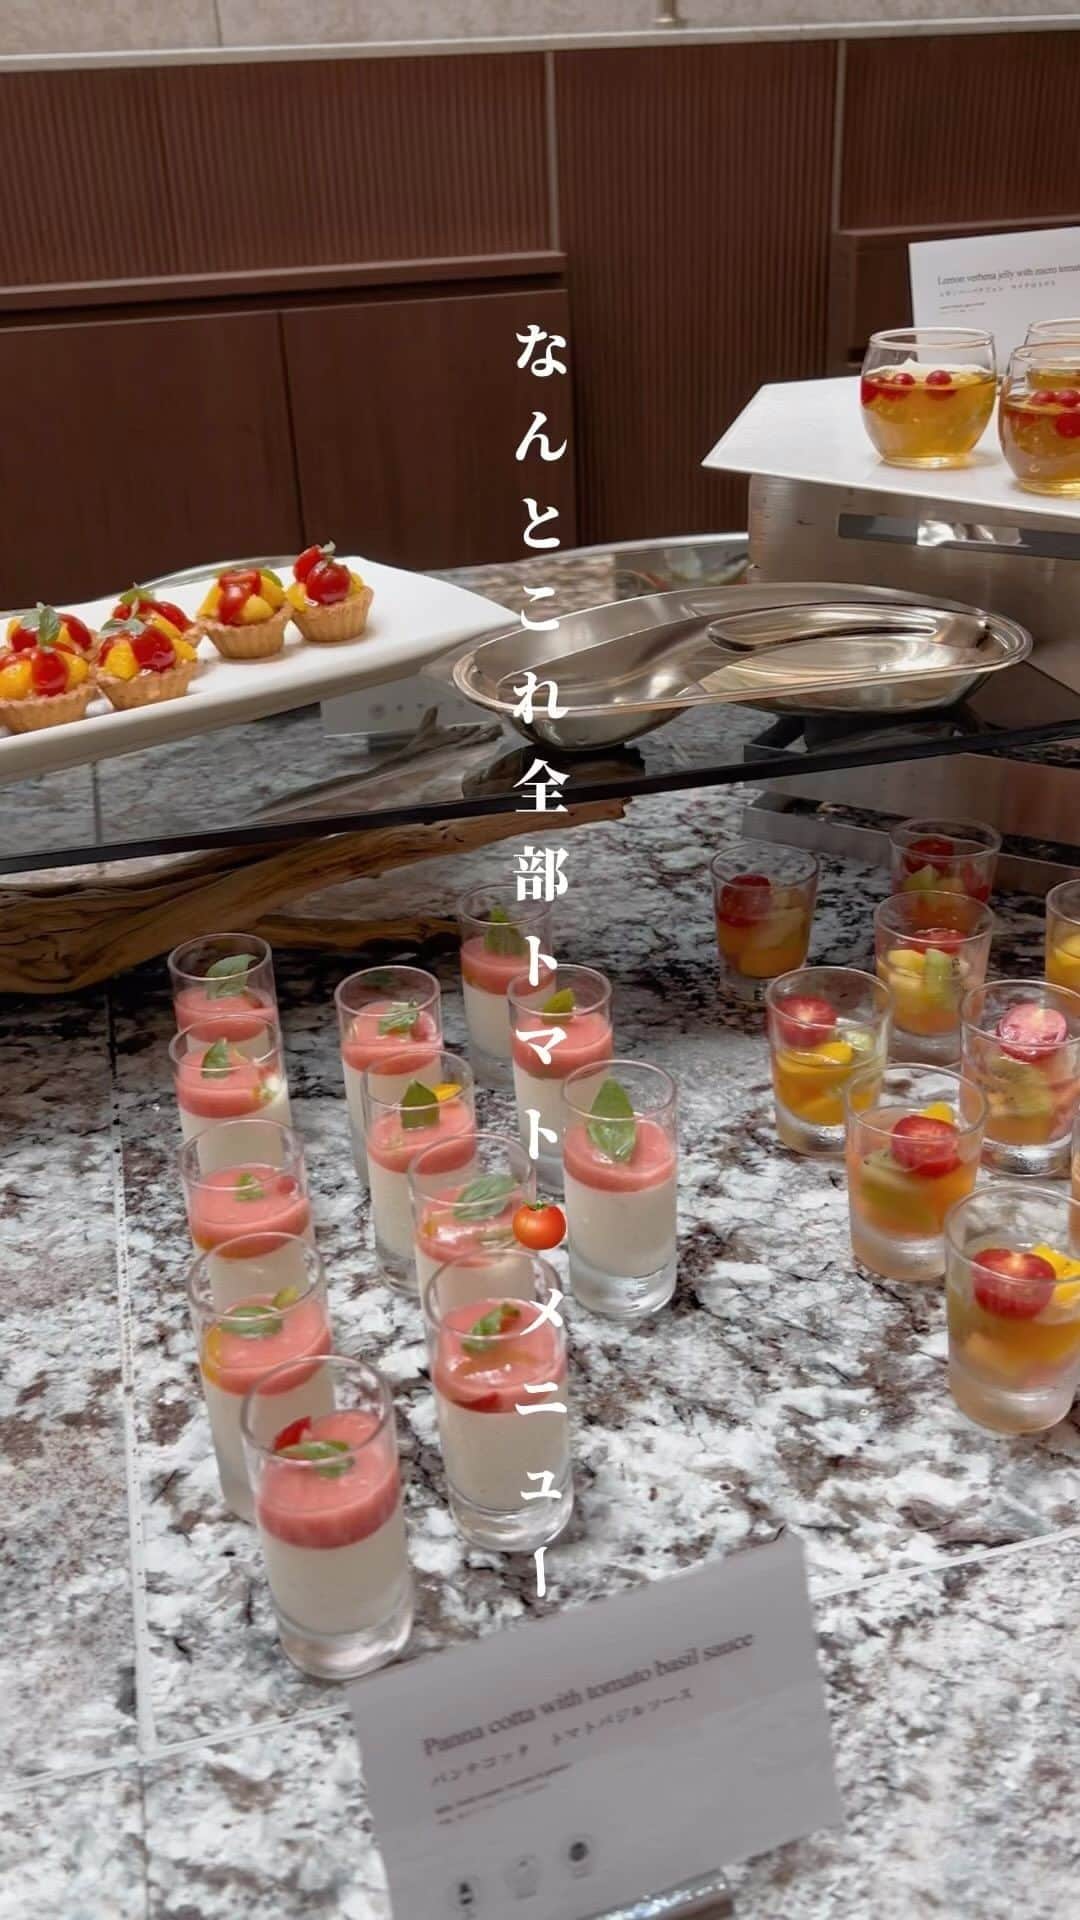 あまいもののインスタグラム：「これ全部トマト料理！？！？！？ 《ストリングスホテル東京インターコンチネンタル》  ꪔ̤̫͚東京 品川 　 だいぶ暑くなってきましたね🌞 そんな夏に食べたいトマト🍅 トマトにはGABAが豊富に含まれていて、ストレス解消にもぜひ食べたい野菜✨ ストリングスホテル東京インターコンチネンタルでは、2023年5月11日（木）から9月5日（火）までトマトを使ったランチブッフェ「トマトヴィヴァーチェ」が楽しめるよ🍅  ここにもトマトが！というくらい様々なトマト料理が楽しめちゃうの 「トマトのパンナコッタ」や「夏トマトのガスパッチョ」、「ドライトマトとパイナップルのキッシュ」などなど 中には、え、これトマトなの！？というくらい甘いスイーツまで✨ 　 メインディッシュは好きなメニューが選べて今回はお肉料理に✨ジューシーでおいしすぎた！行ってみてね 　 ▪︎ランチブッフェ トマトヴィヴァーチェ ▪︎料金 平日 お1人様 6380円、お子様 小学生 3190円、未就学児 無料 土日祝 お1人様 7480円、お子様 小学生 3740円、未就学児 無料 ▪︎開催期間 2023/5/11（木）～9/5（火） 11:30～15:00（L.O.14:30 　 　 ━━ ━━ ━━ ━━   #ストリングスホテル東京インターコンチネンタル  @strings_ic   ━━ ━━ ━━ ━━  . . . . .  #オズモール #トマト #strings_ic #pr #東京女子部 #東京カフェ #品川カフェ #ストリングスホテル東京インターコンチネンタル #ホテルブッフェ #ビュッフェ #ブッフェ #東京グルメ #東京ランチ #品川グルメ #品川ランチ」